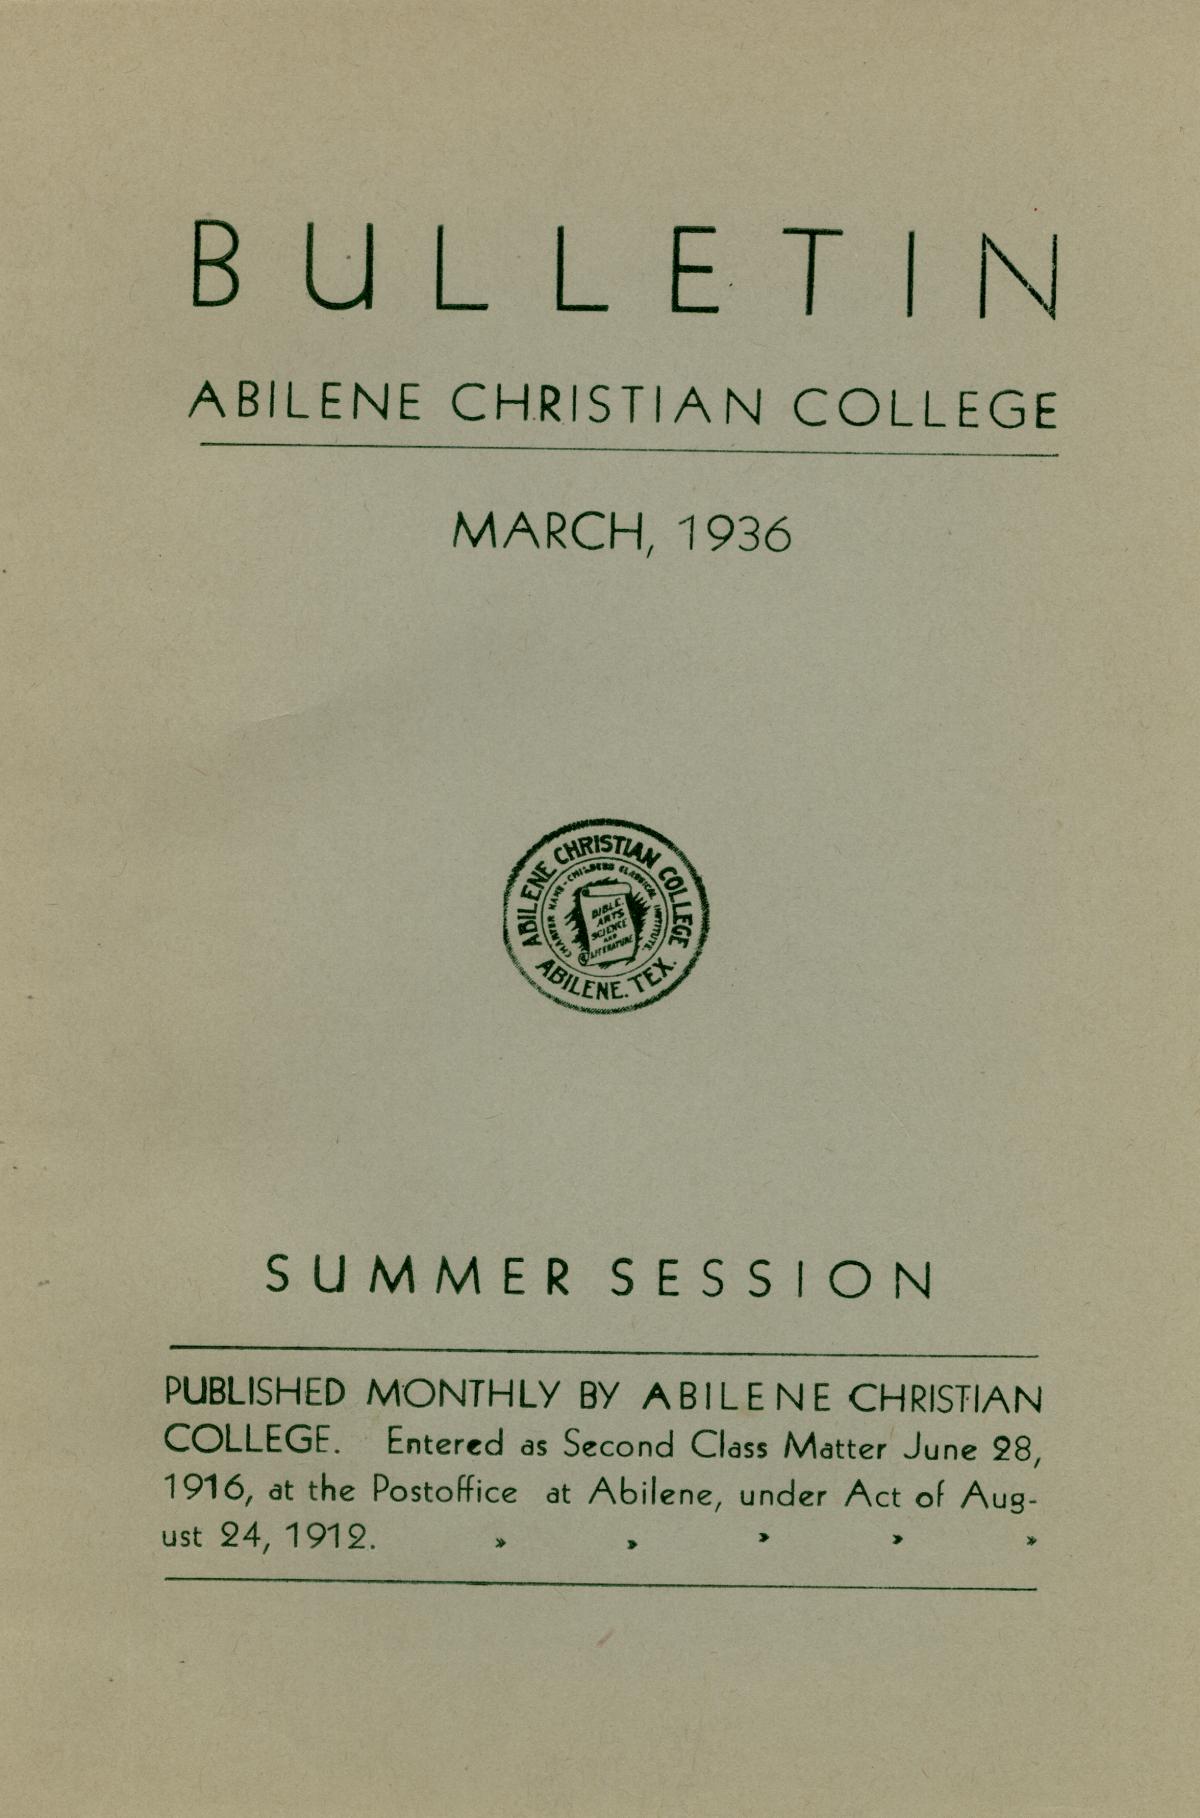 Catalog of Abilene Christian College, 1936
                                                
                                                    Front Cover
                                                